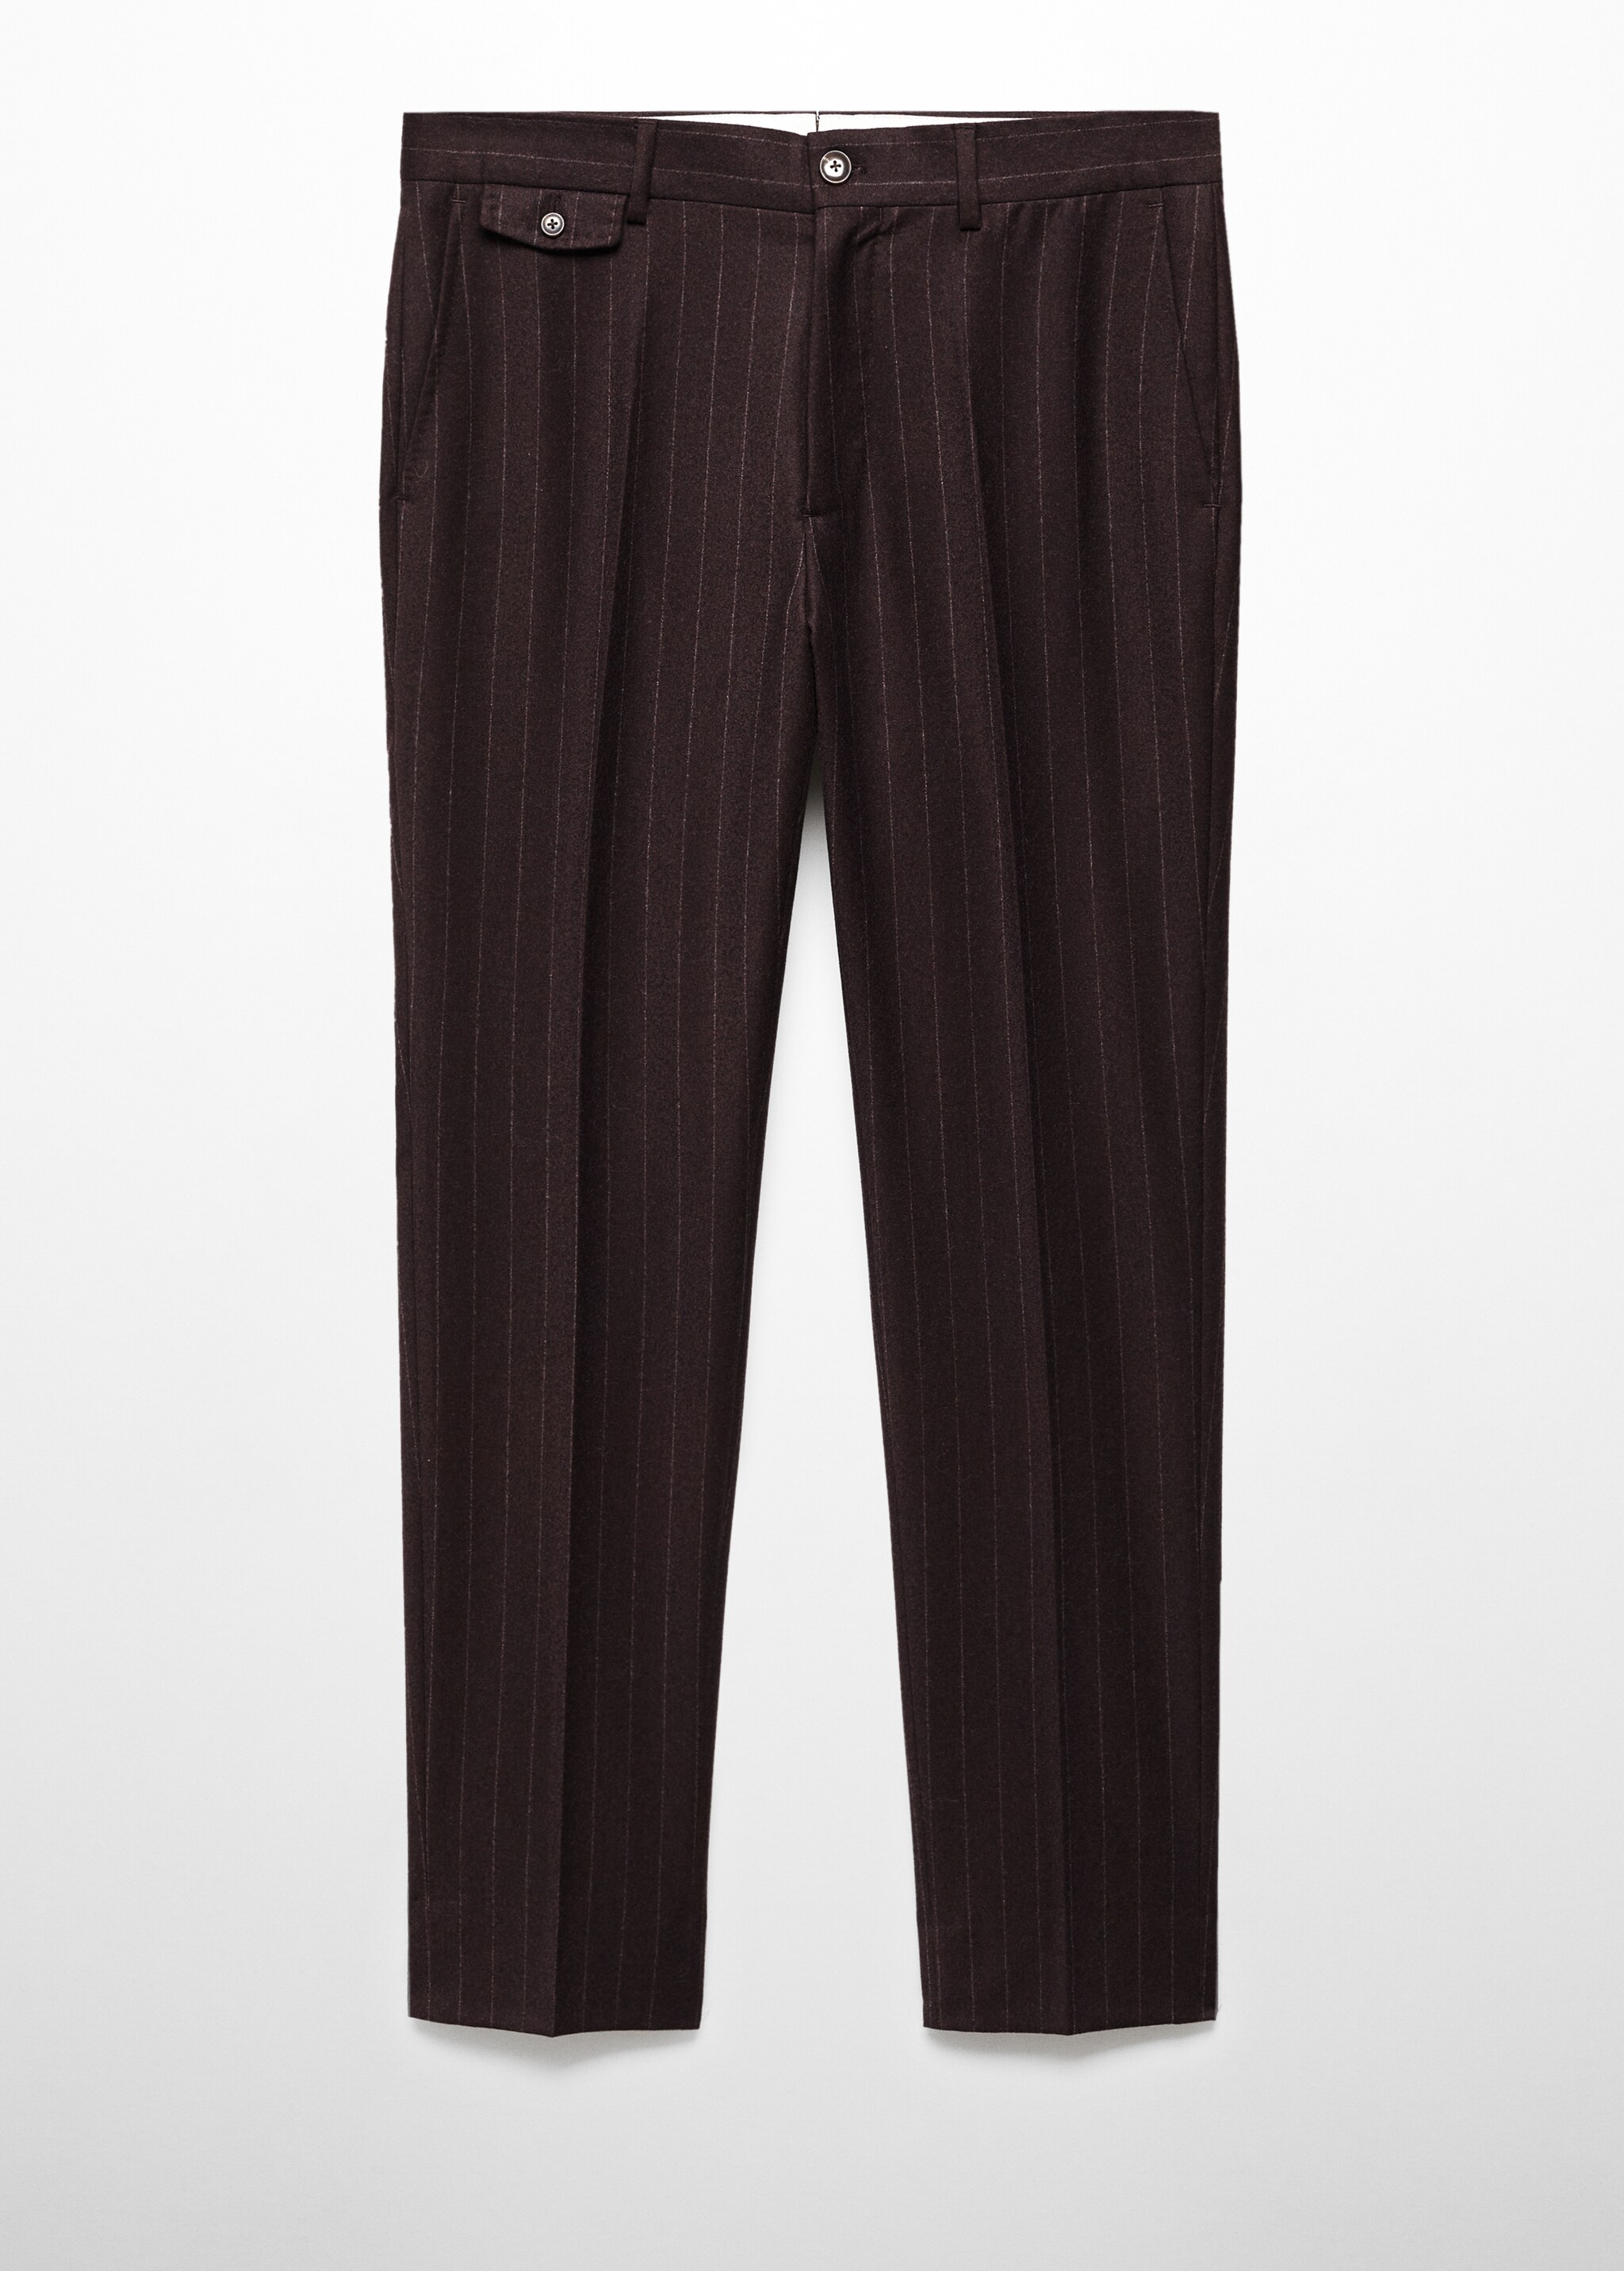 Pantaloni 100% lana vergine gessati - Articolo senza modello